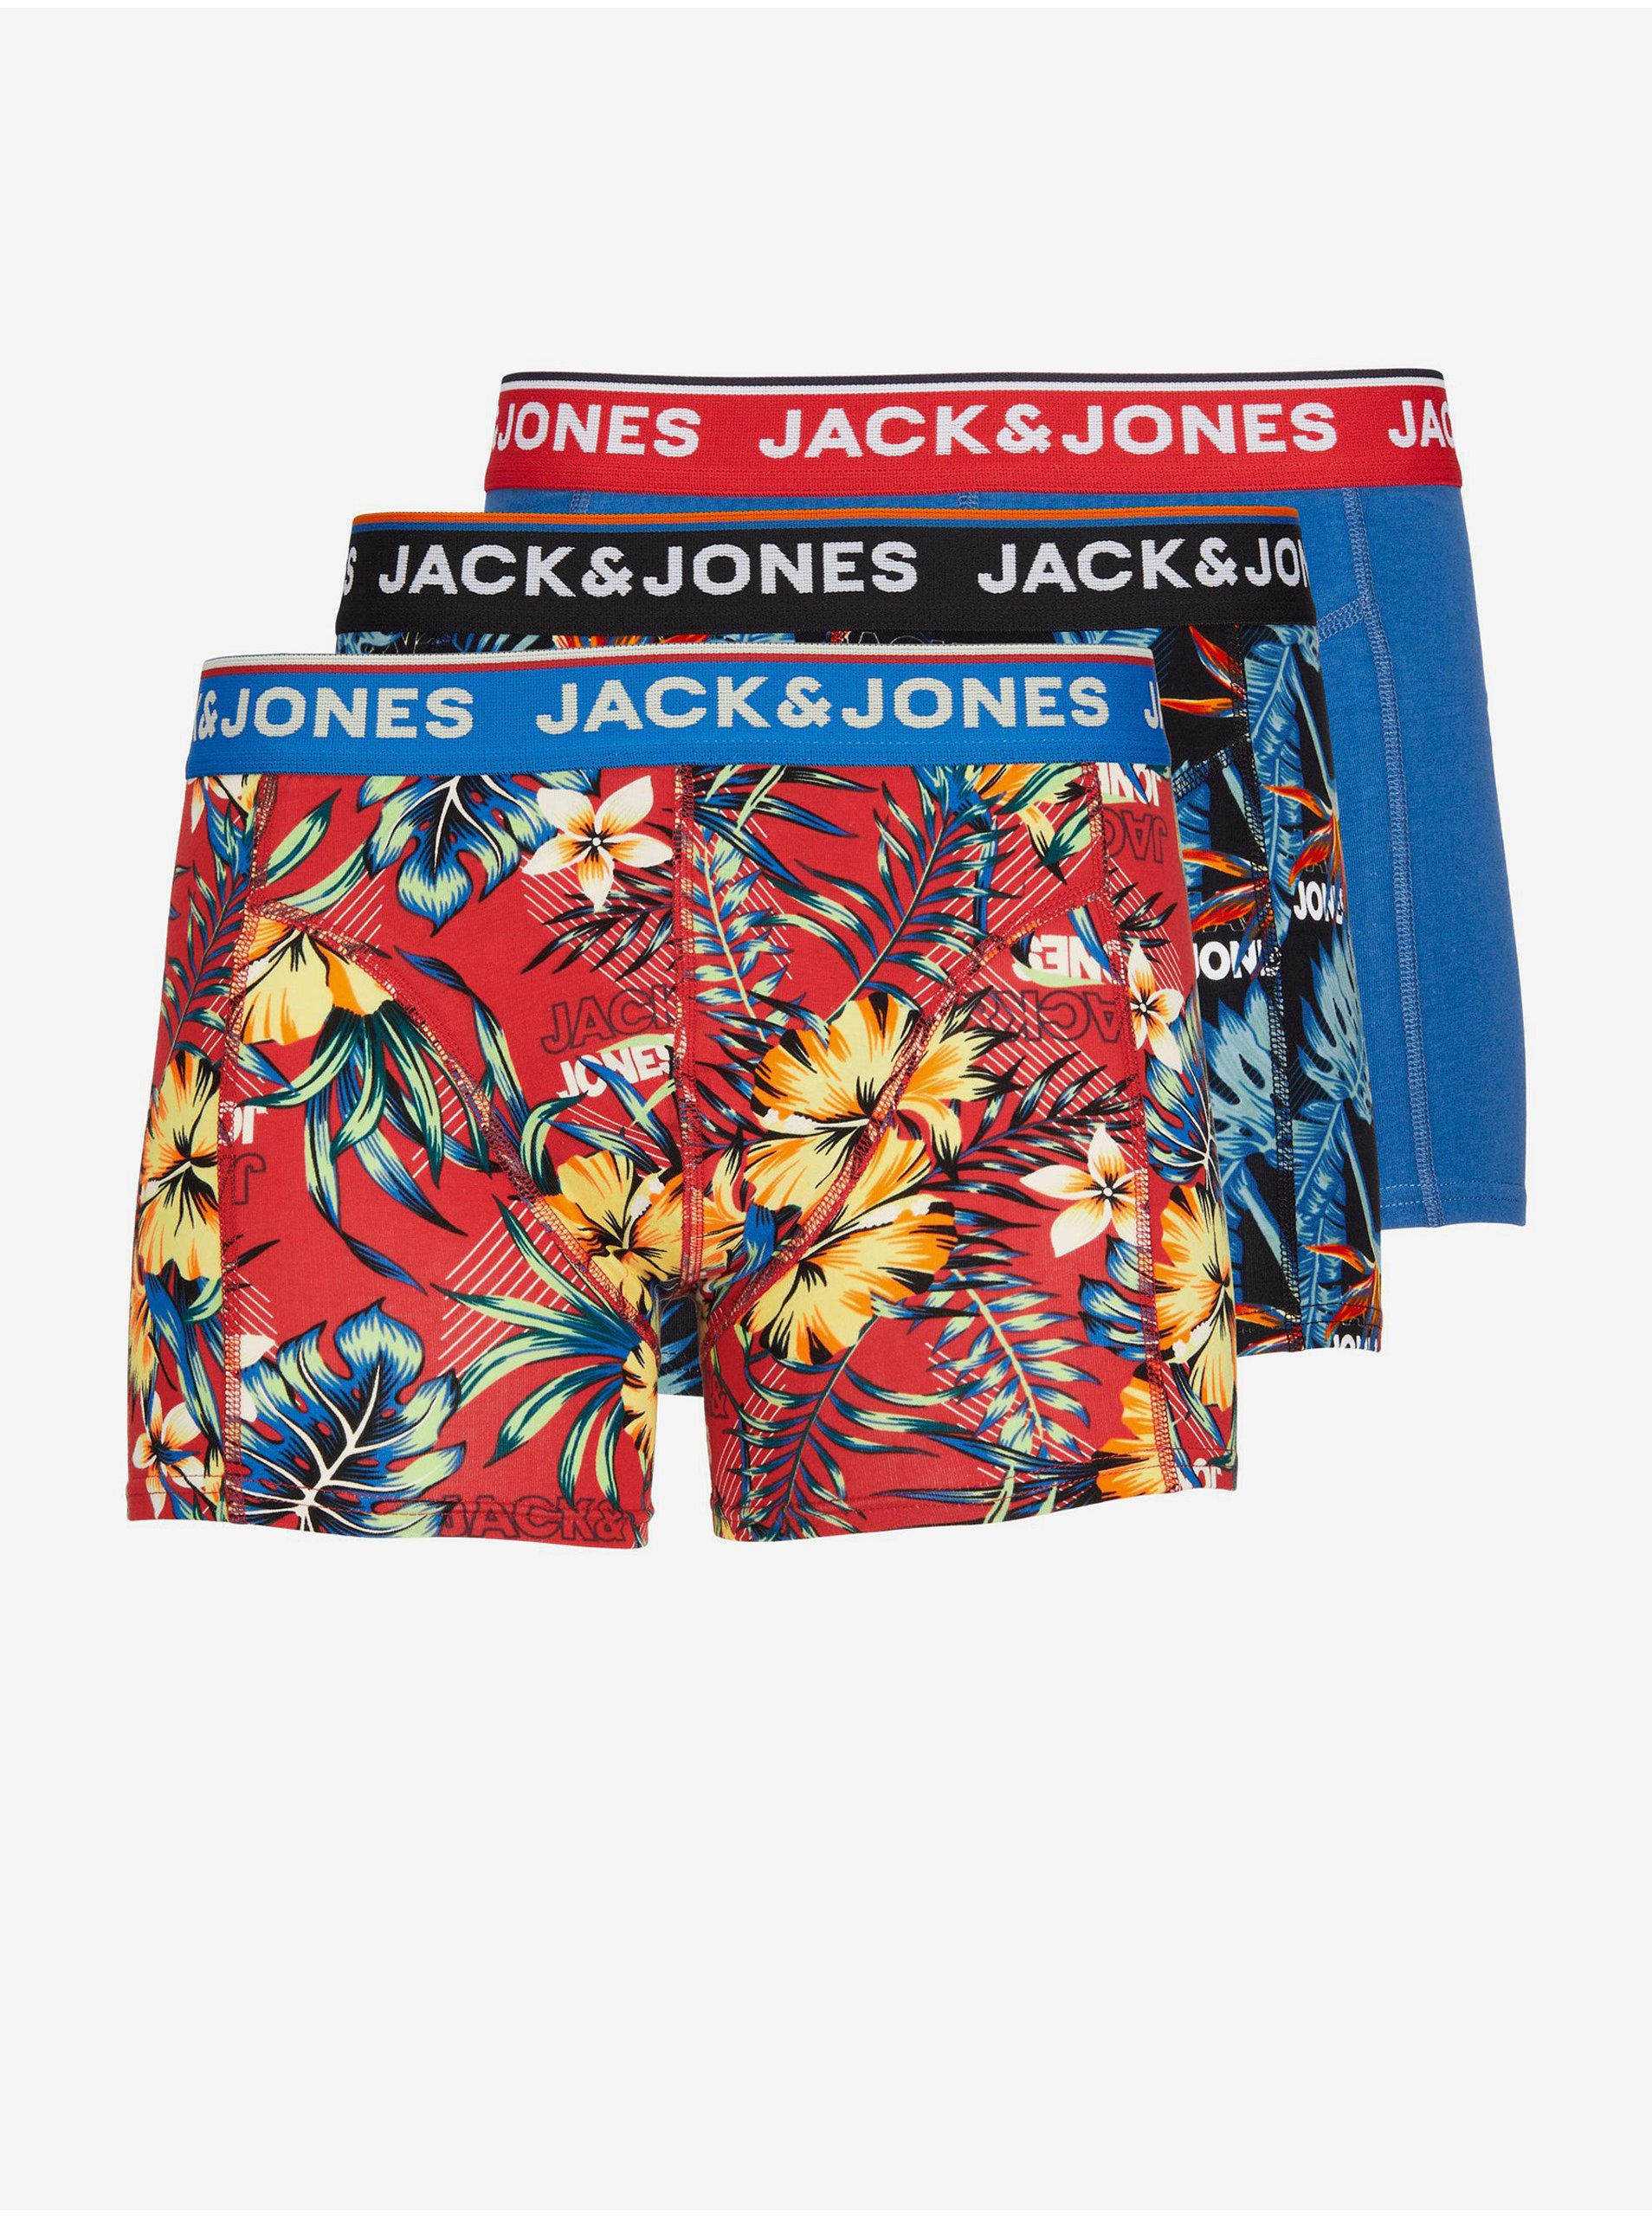 Lacno Boxerky pre mužov Jack & Jones - modrá, tmavomodrá, červená